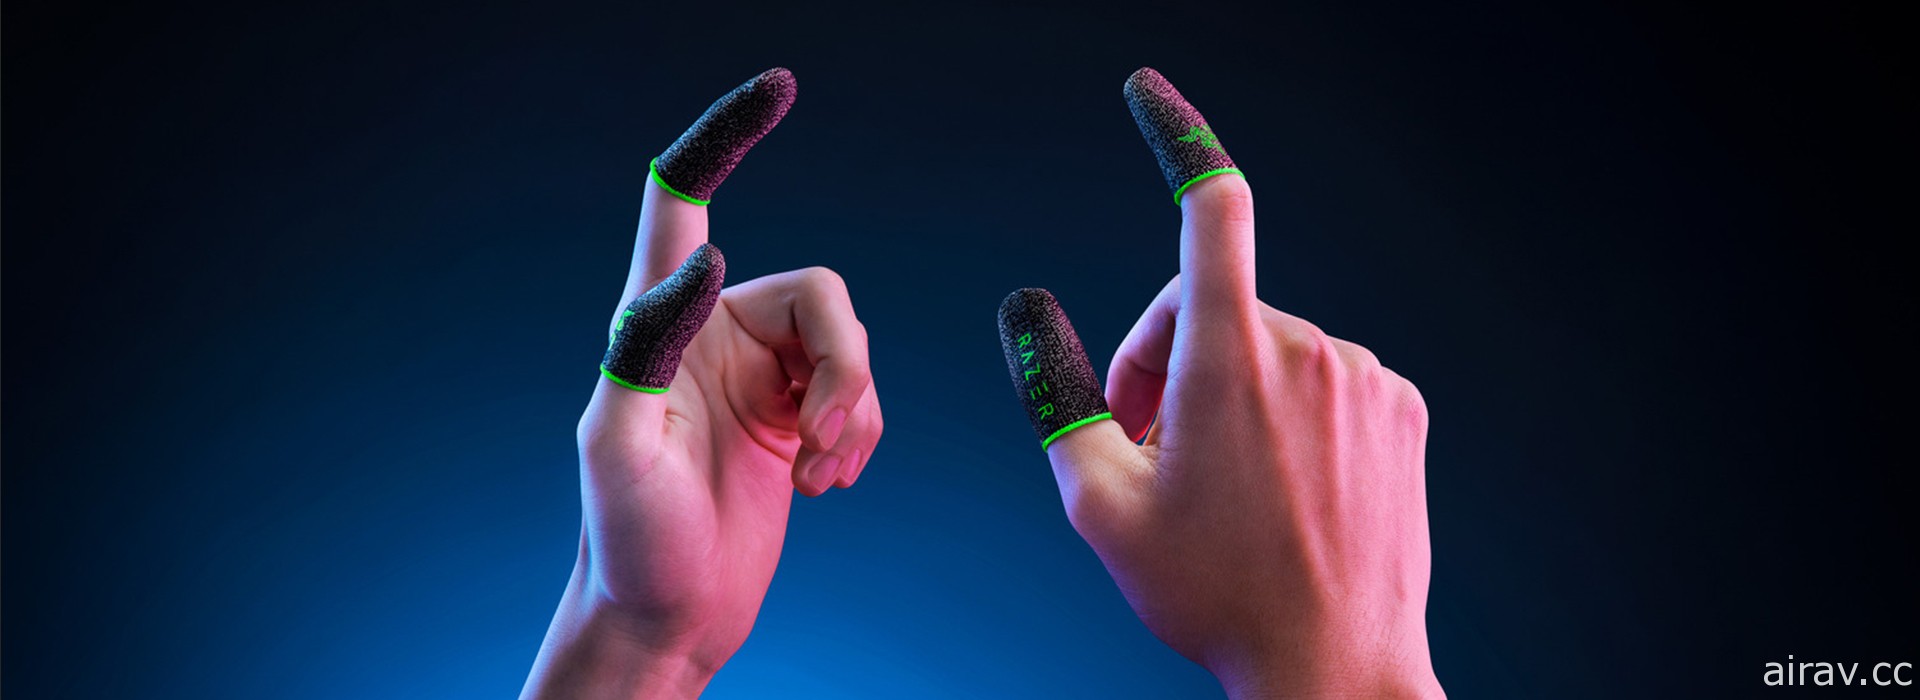 雷蛇推出手机游戏专用“电竞指套 Razer Gaming Finger Sleeve” 强调轻薄、高灵敏度